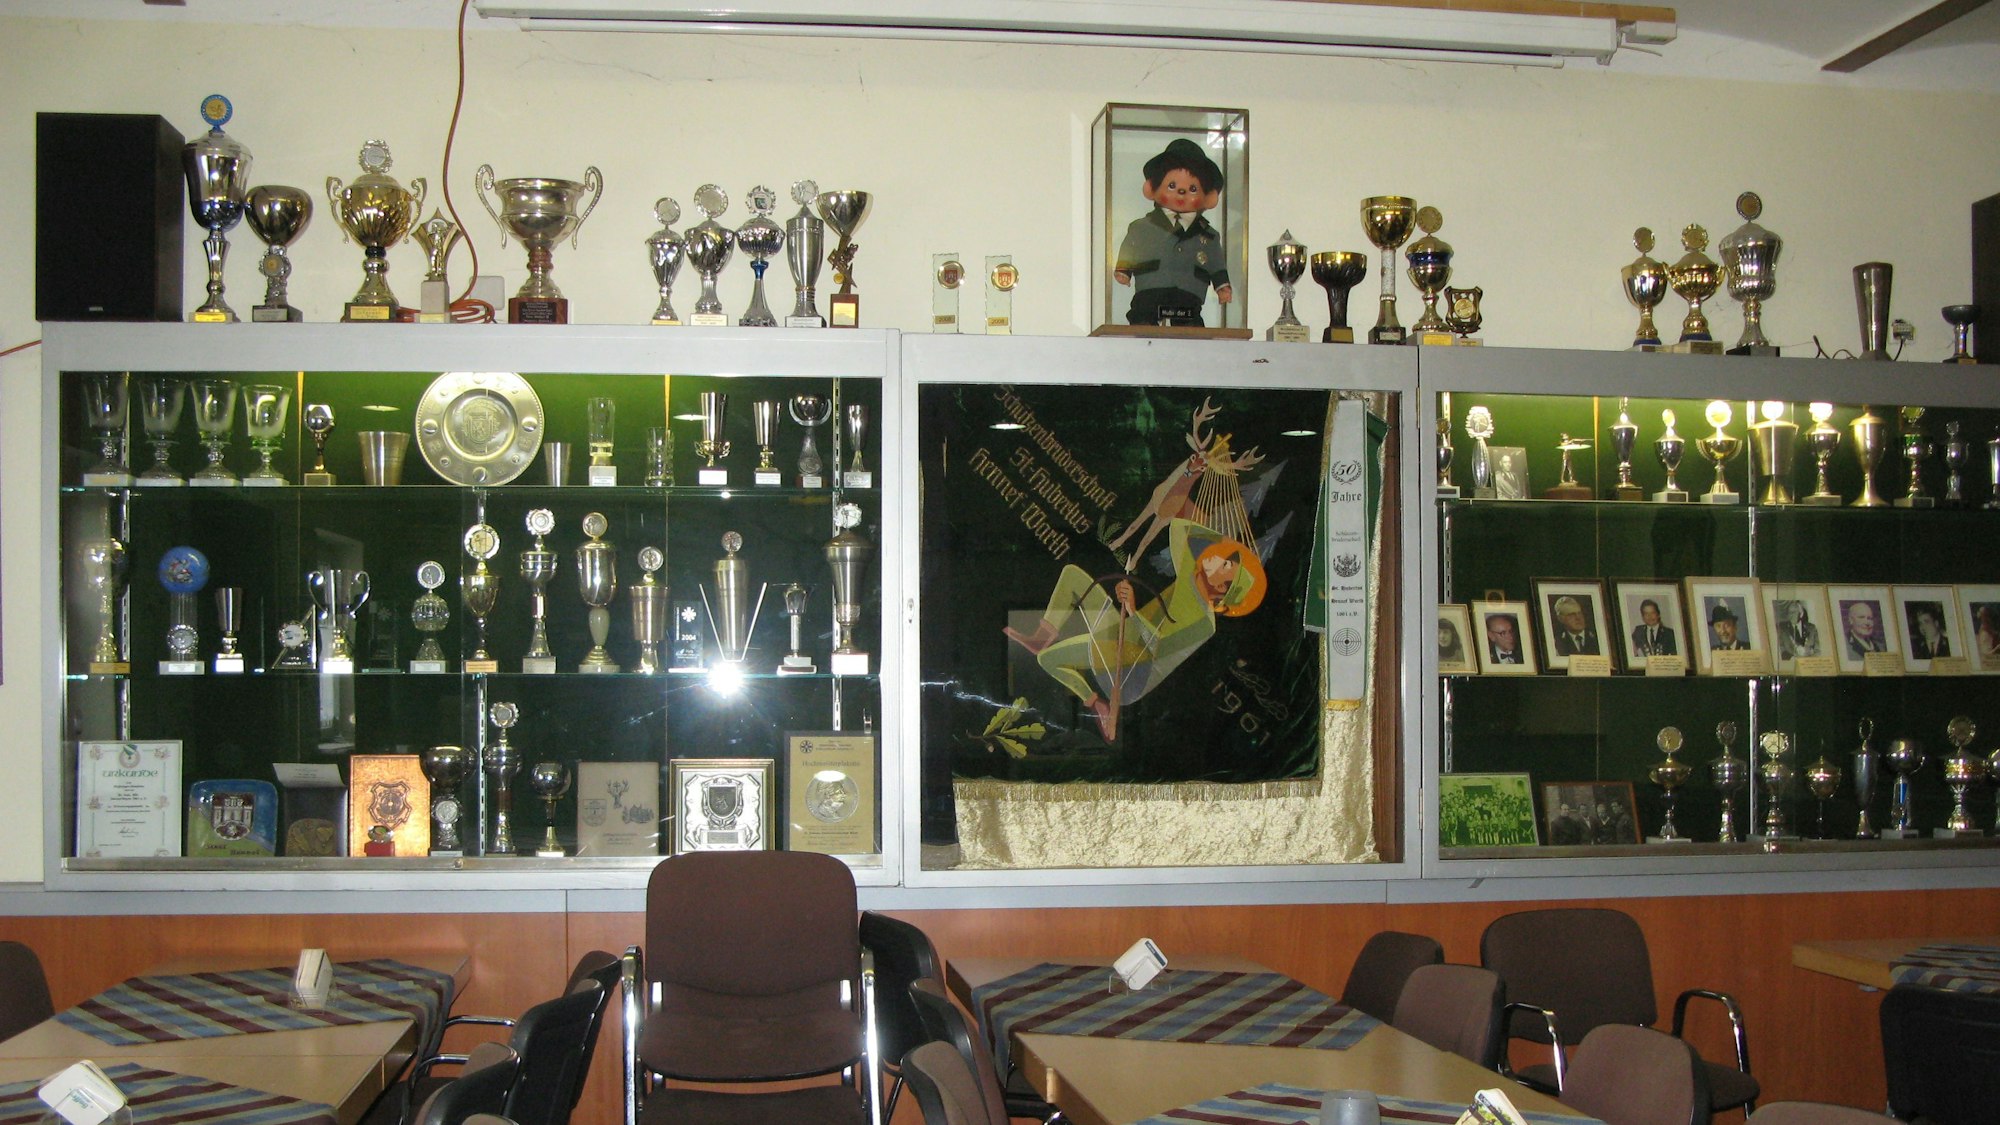 Das Bild zeigt die große Pokalvitrine der Hubertus-Schützen mit zahlreichen Trophäen, Standartentuch, Urkunden und Porträtfotos.